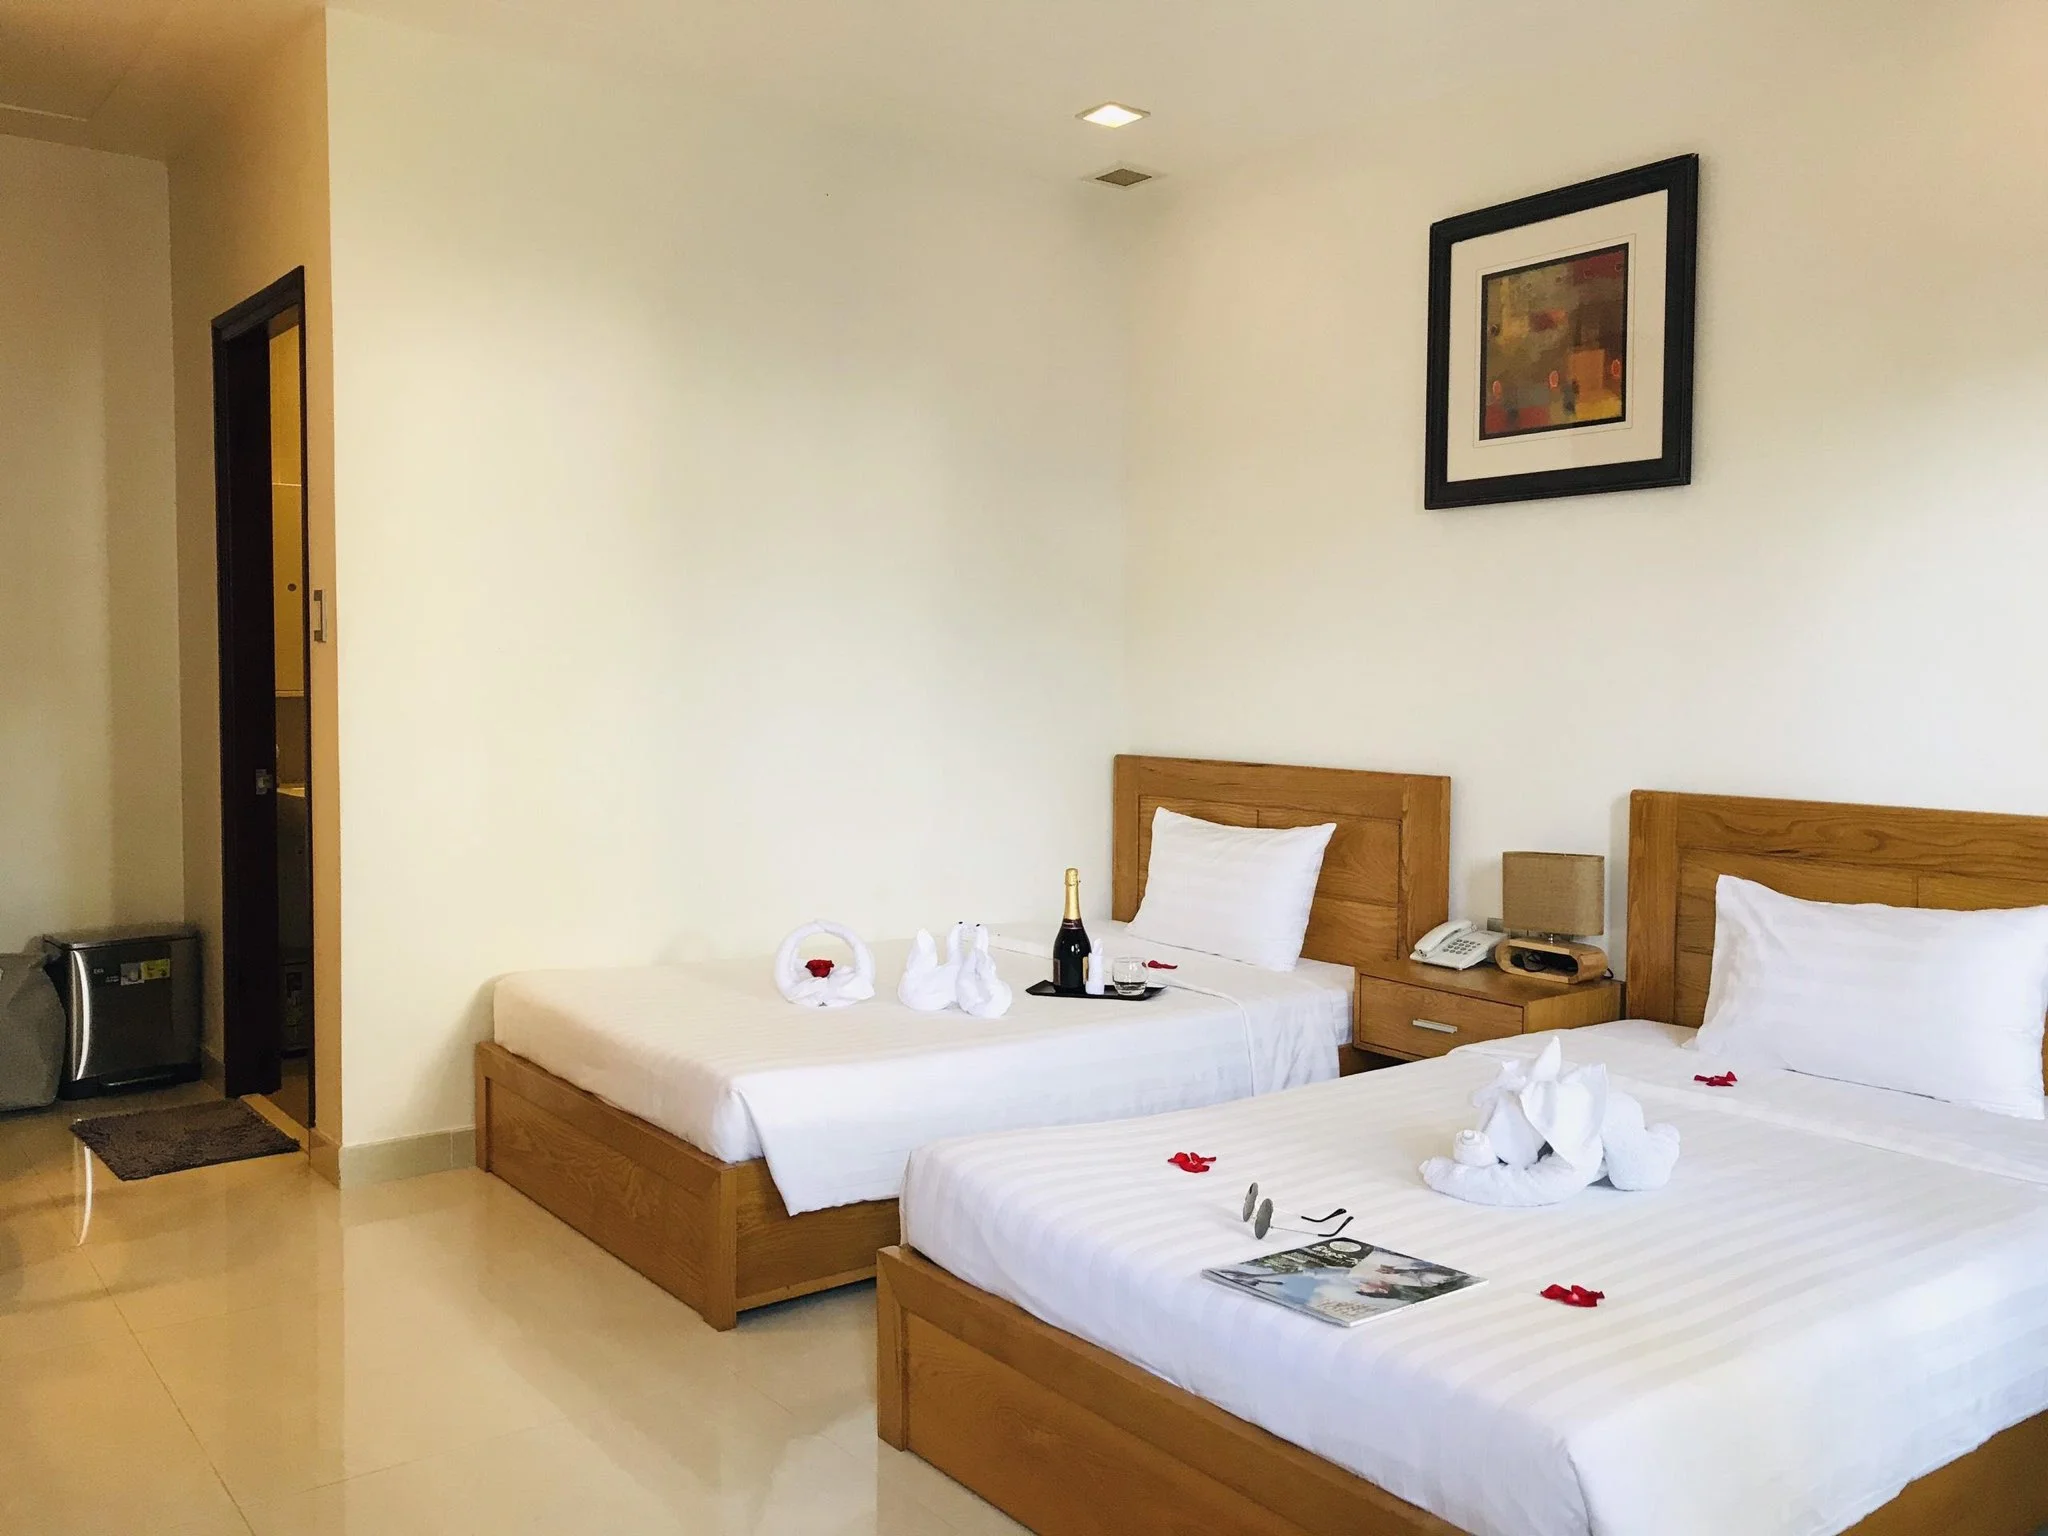 Khách sạn Qli Hotel Mũi Né Phan Thiết - Mũi Né